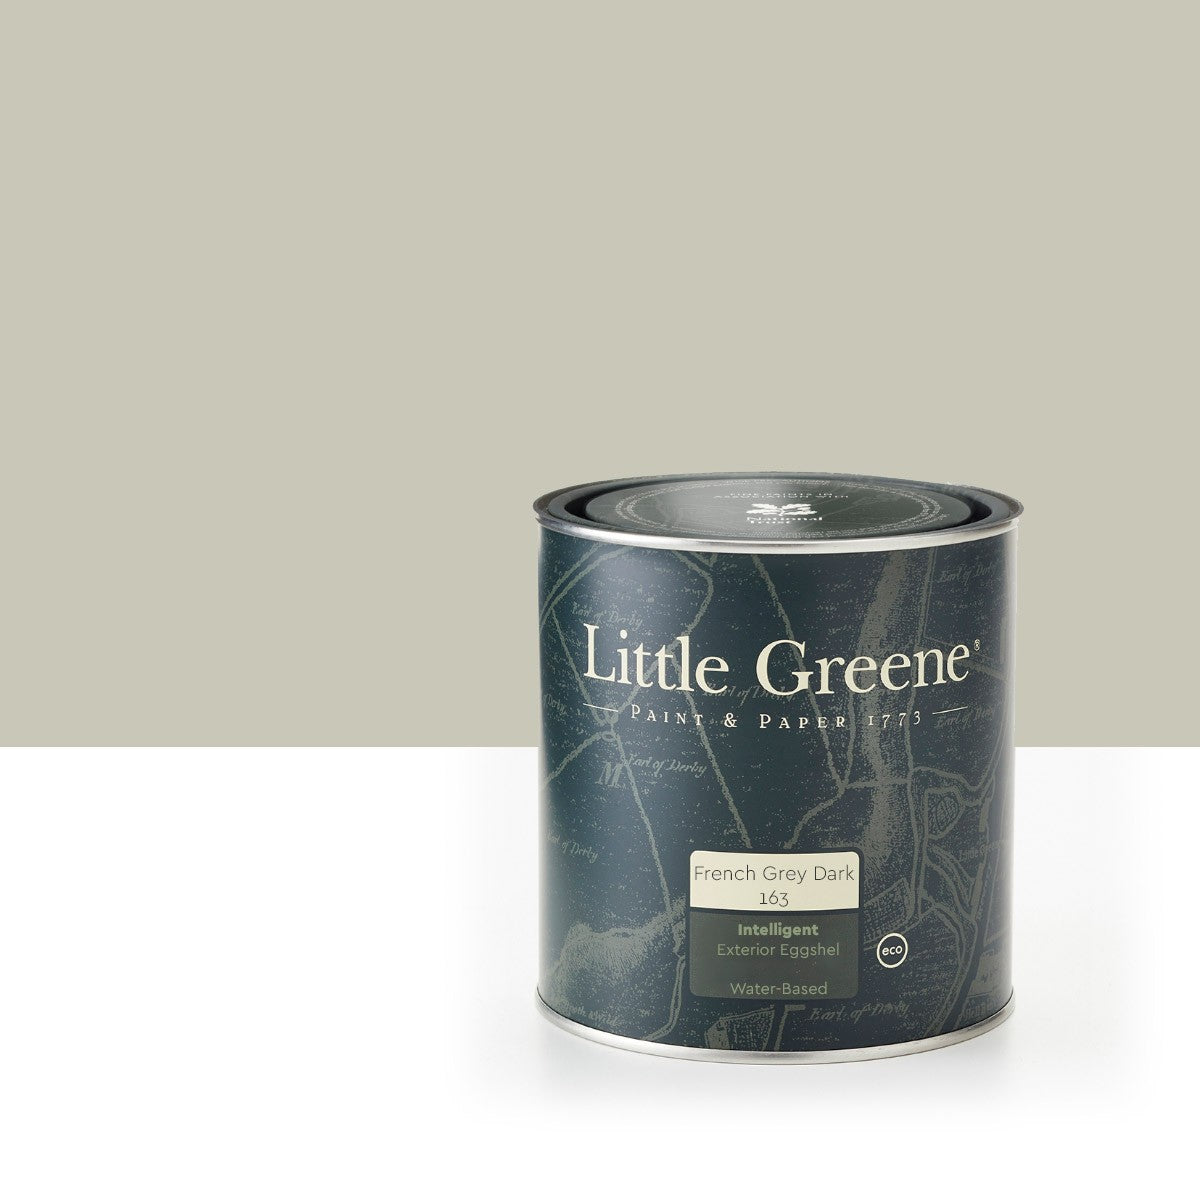 Χρώμα ξύλου Little Greene | French Grey Dark 163 LITTLE GREENE - FRENCH GREY DARK (163) 2,5lt 91070